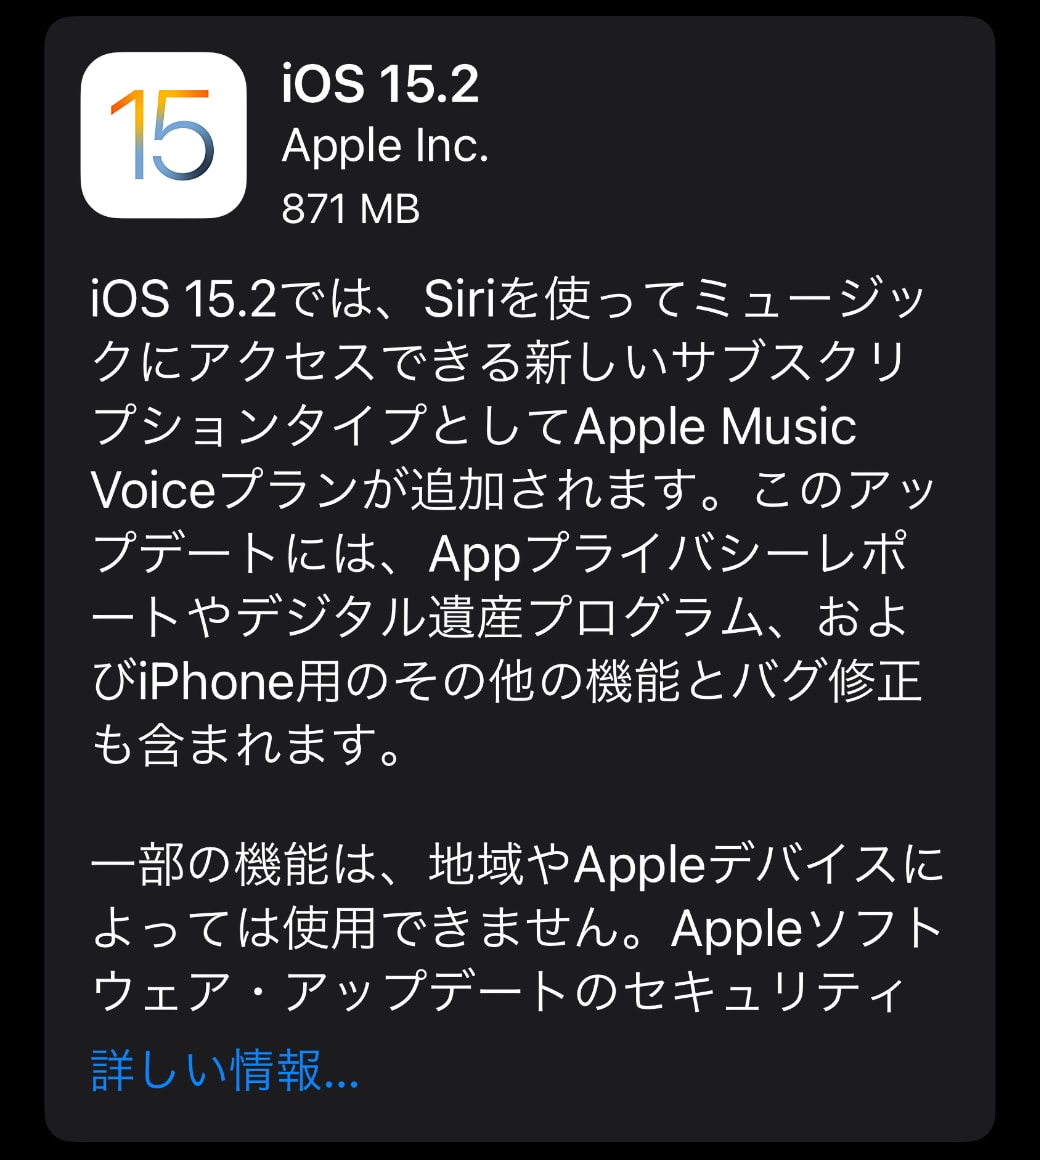 Apple、「iOS 15.2」をリリース ‒ Apple Music Voiceプラン、Appプライバシーレポート対応やデジタル遺産プログラムなど